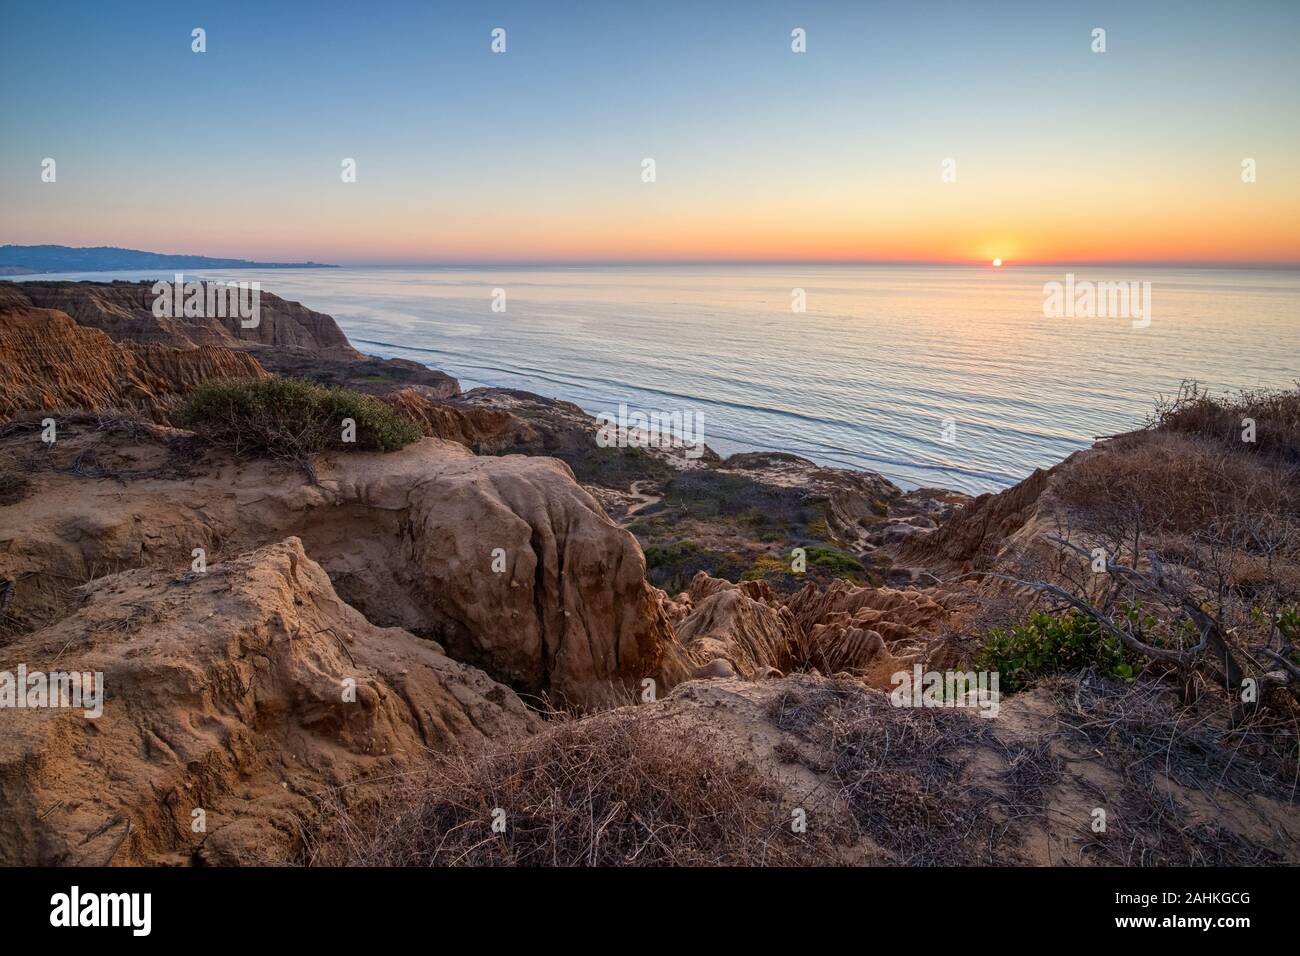 Vue à couper le souffle dans la ligne de falaises de grès robuste de rasoir au coucher du soleil, des membres de la réserve nationale de Torrey Pines, La Jolla, Californie Banque D'Images